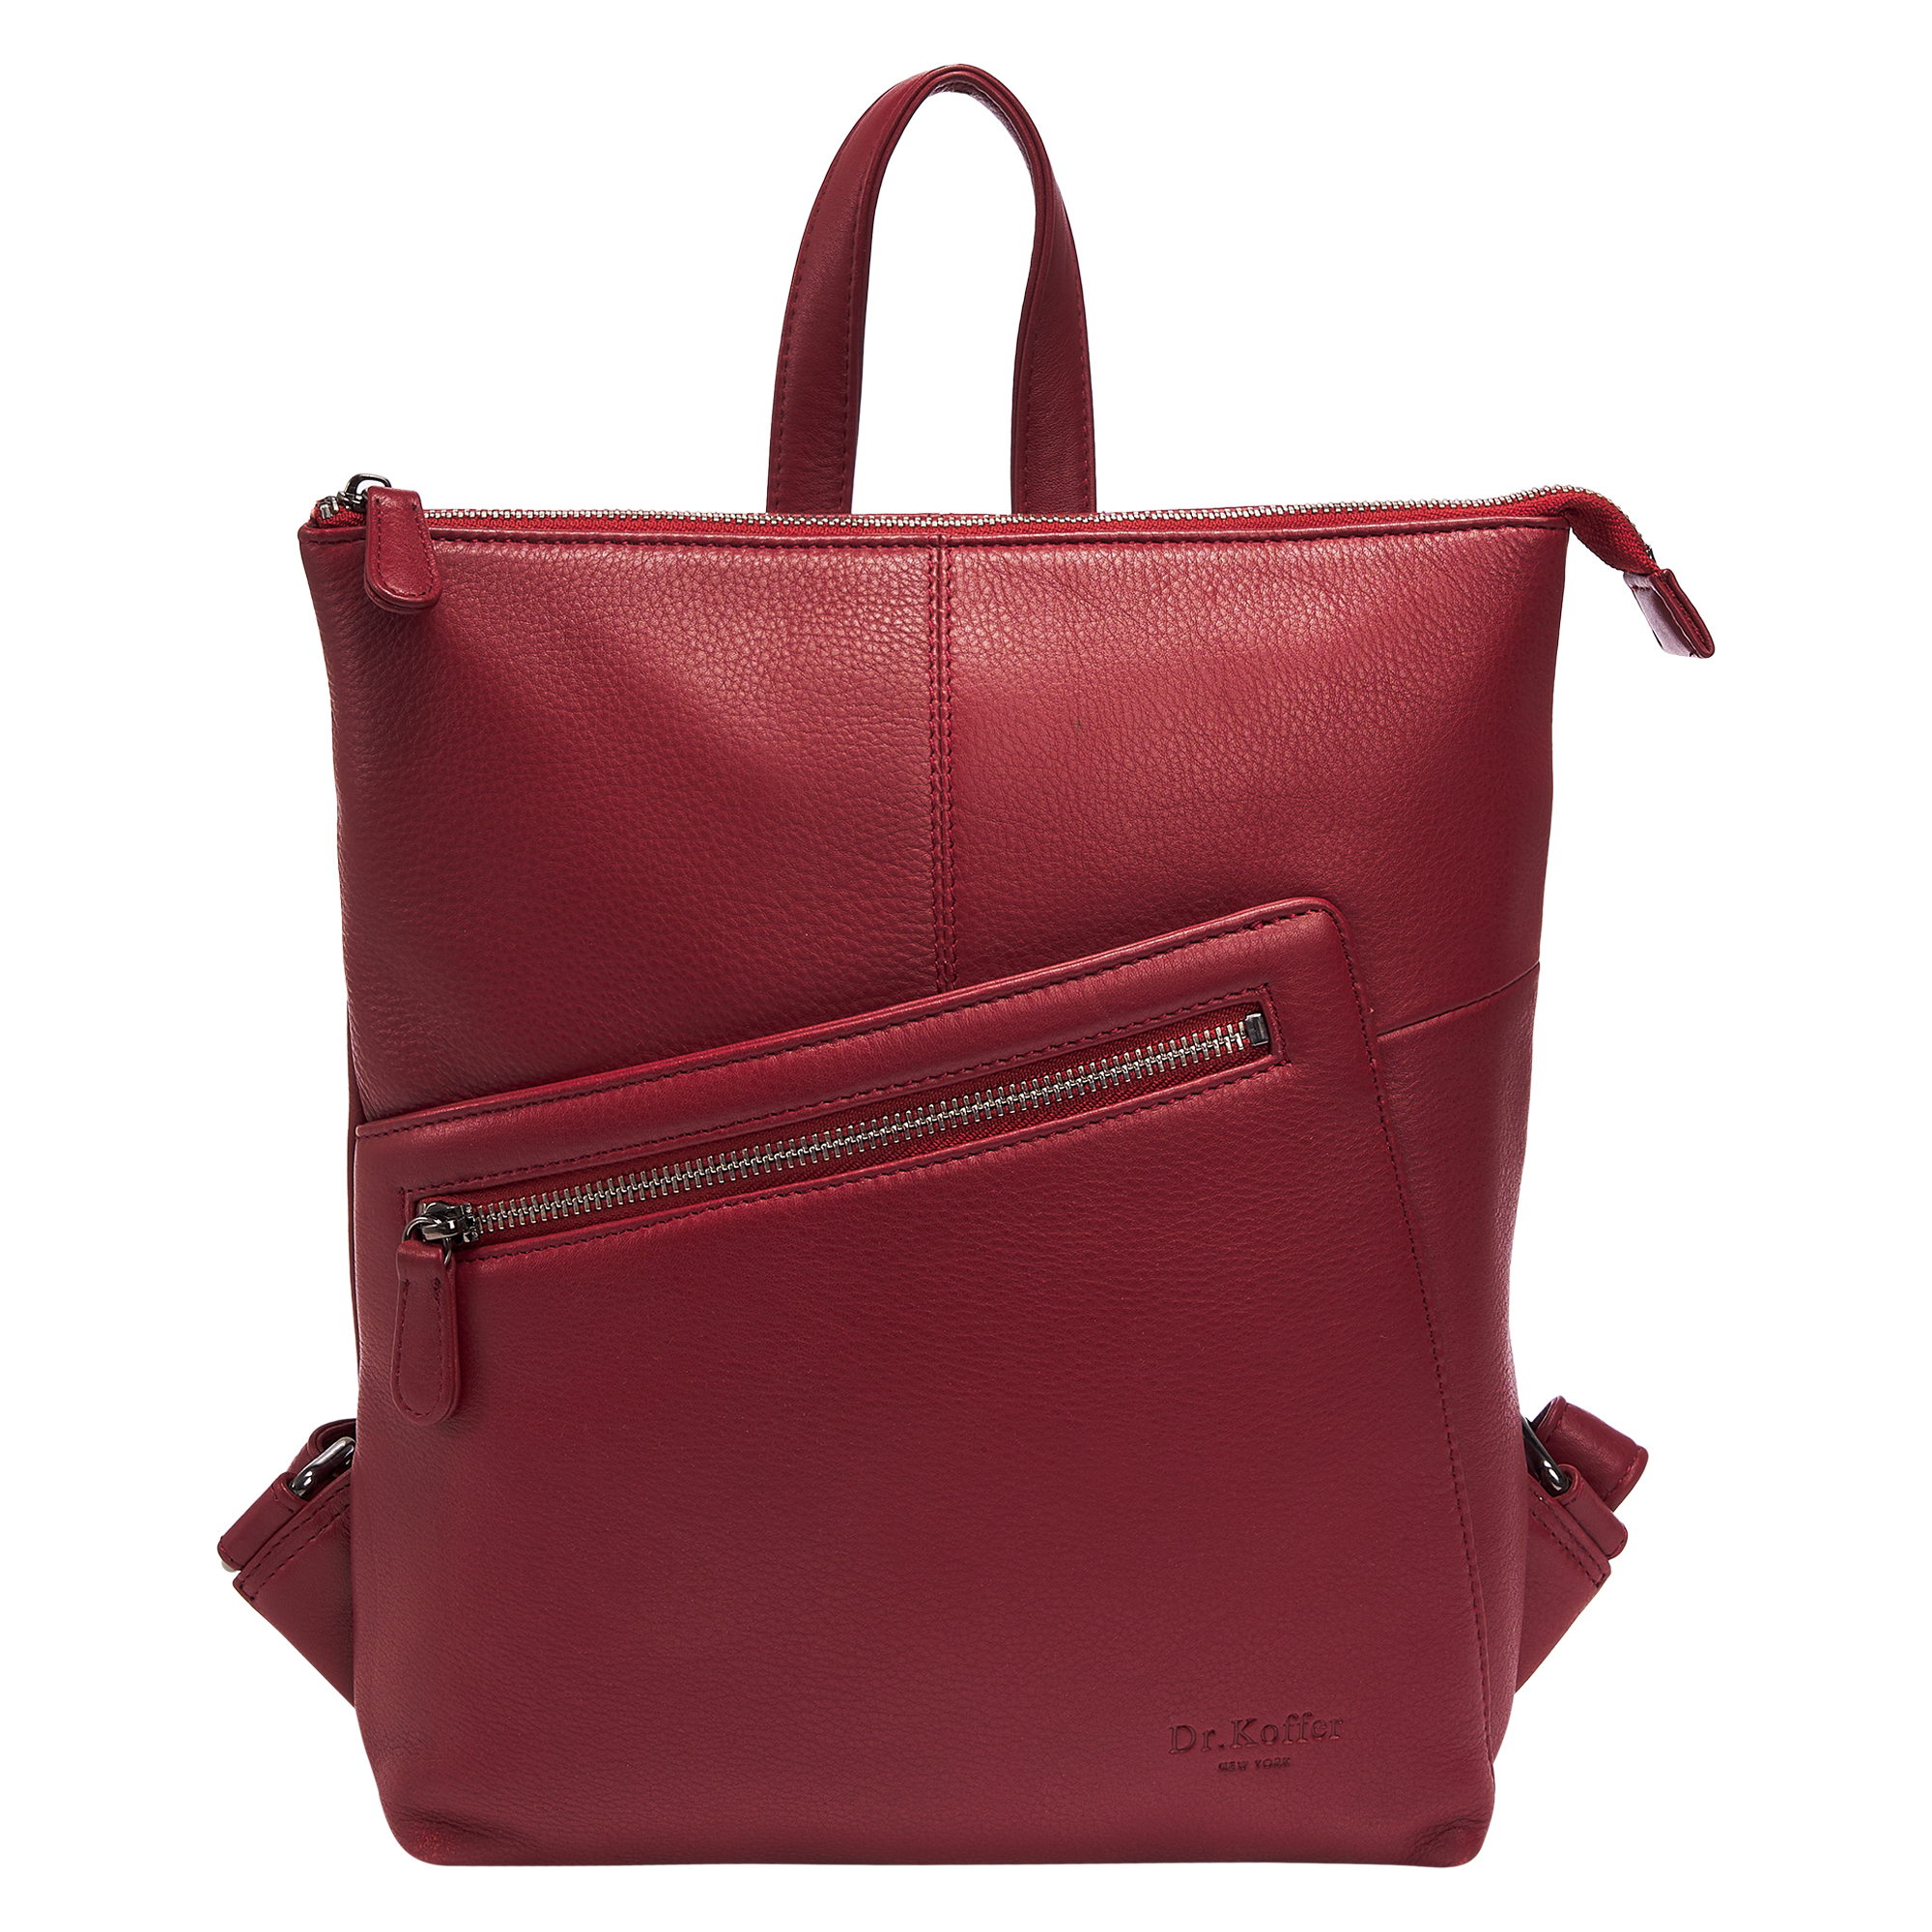 Др.Коффер W620117-41-03 рюкзак, цвет красный - фото 6